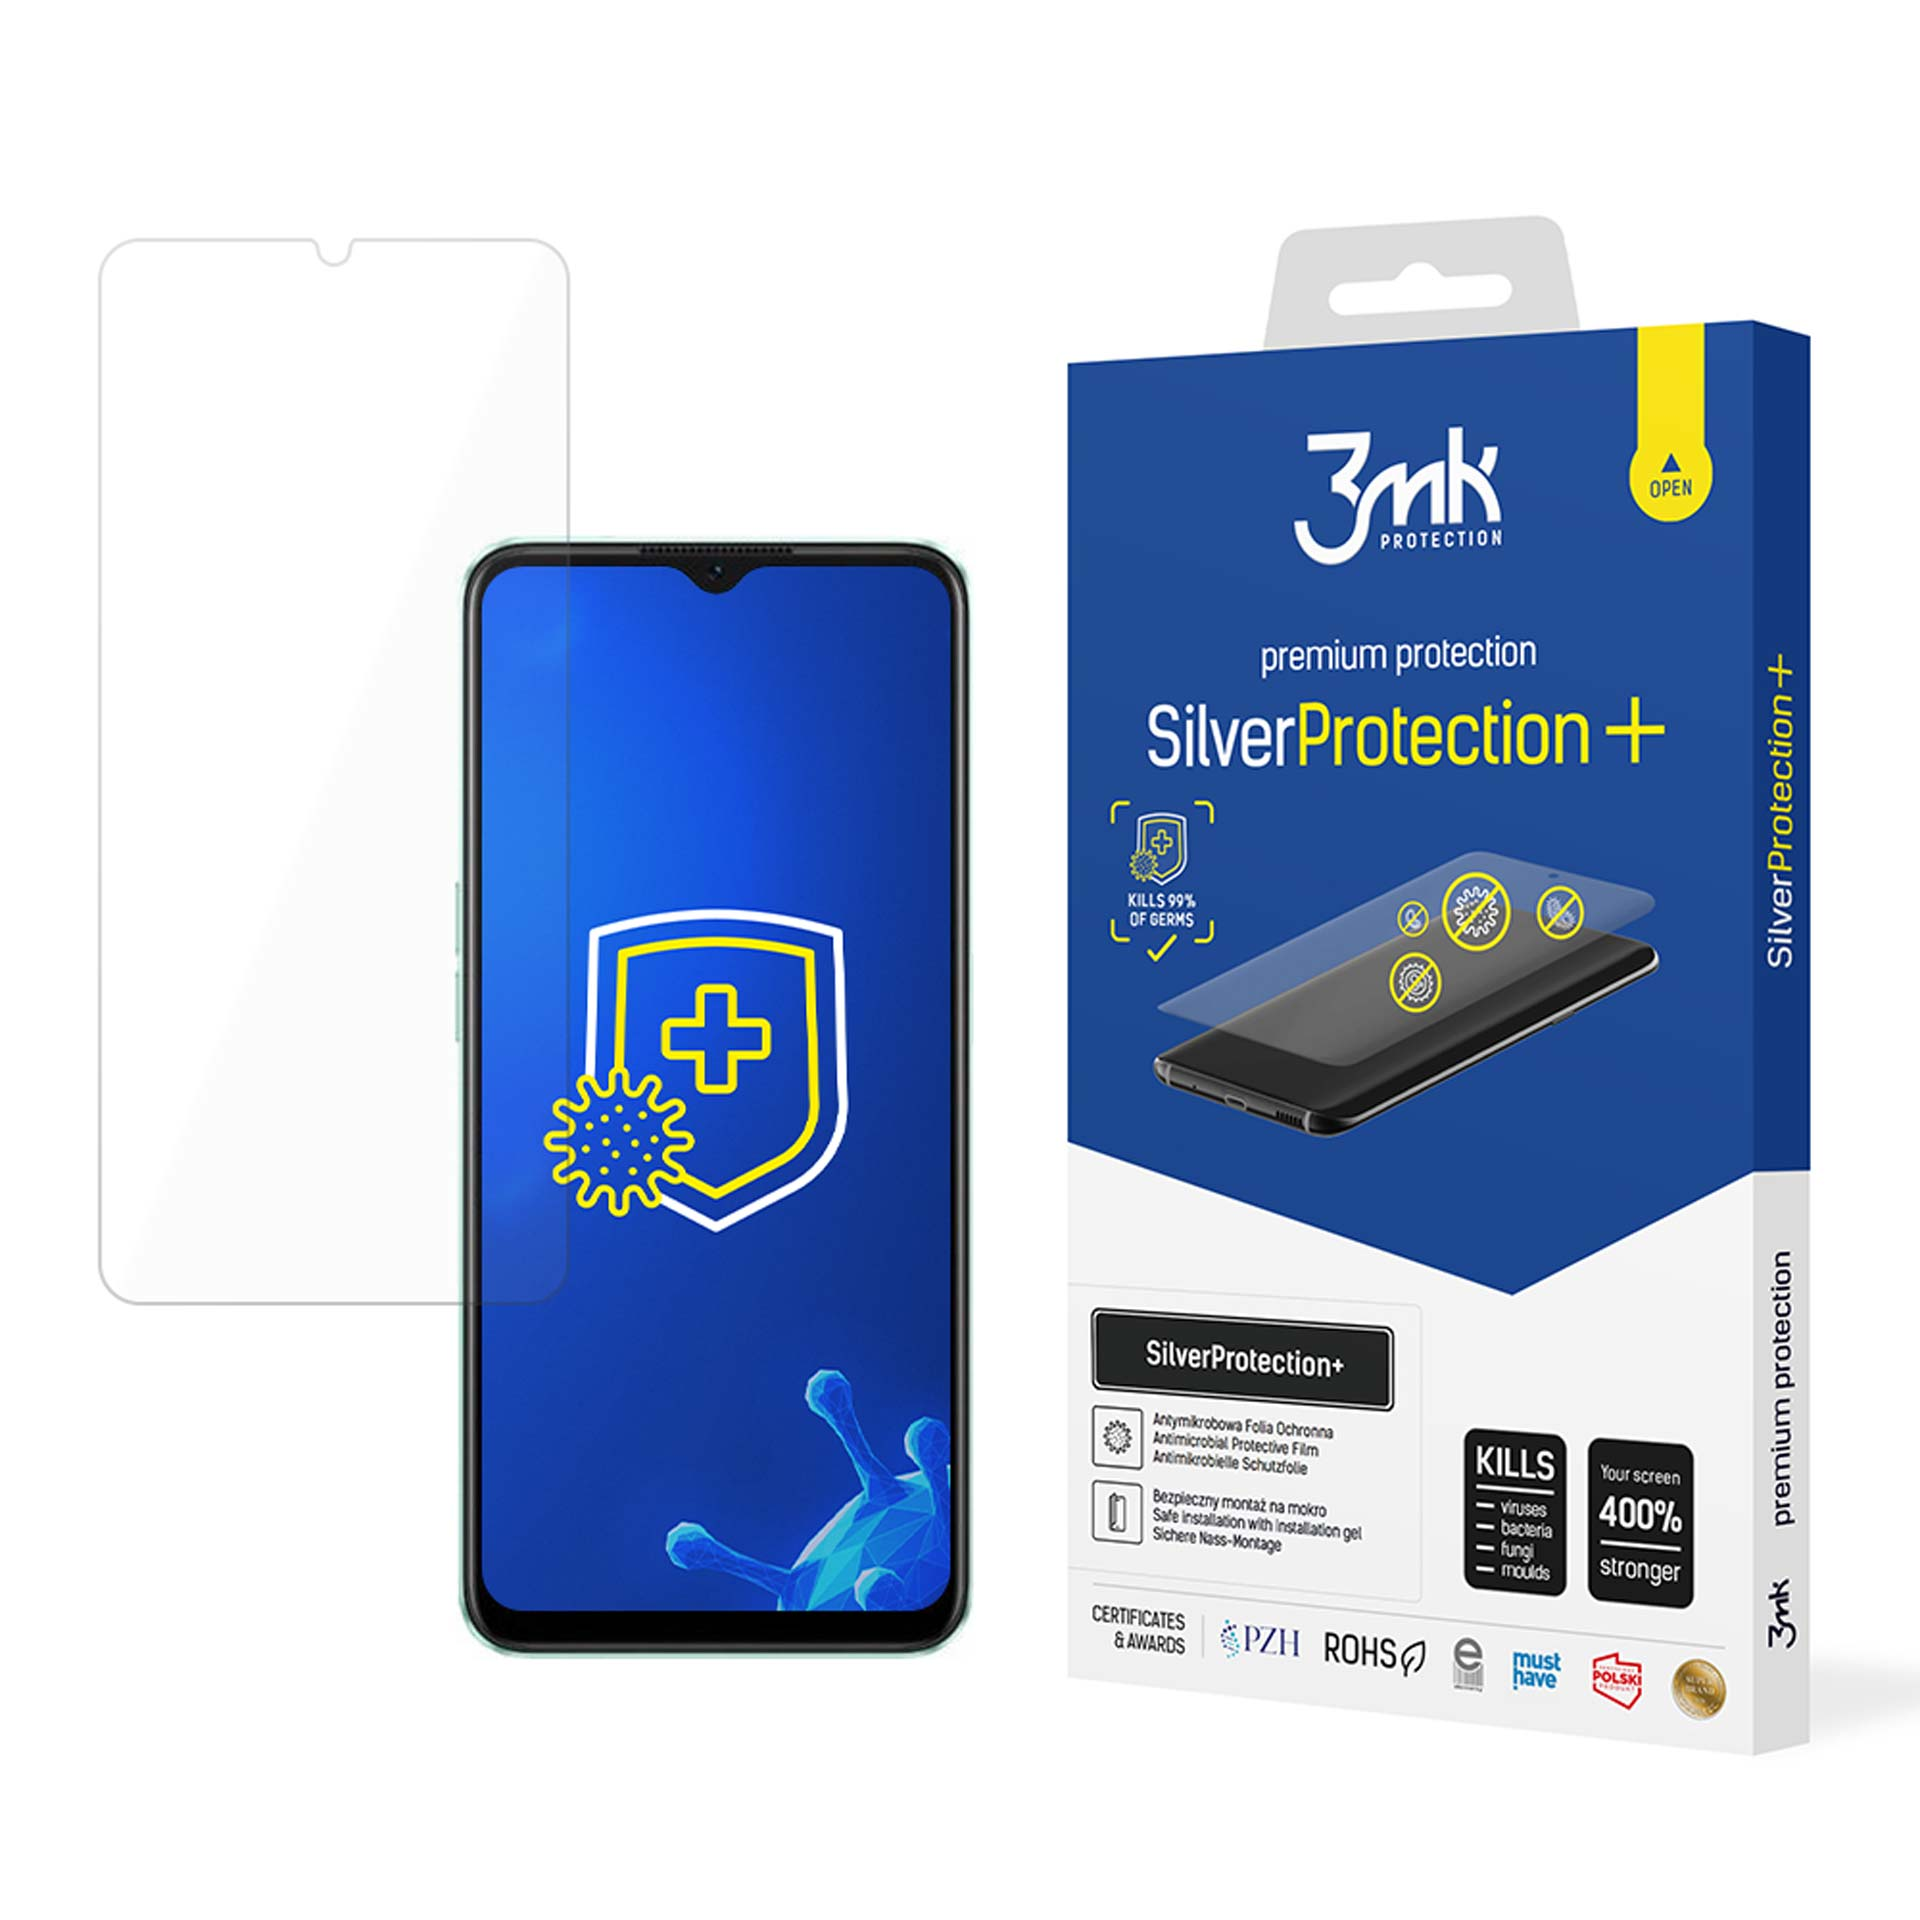 3MK Oppo Oppo 3mk 5G/A57e/A57s Oppo 4G/A57 A57 SilverProtection+ 5G/A57e/A57s) A57 - 4G/A57 Folie(für